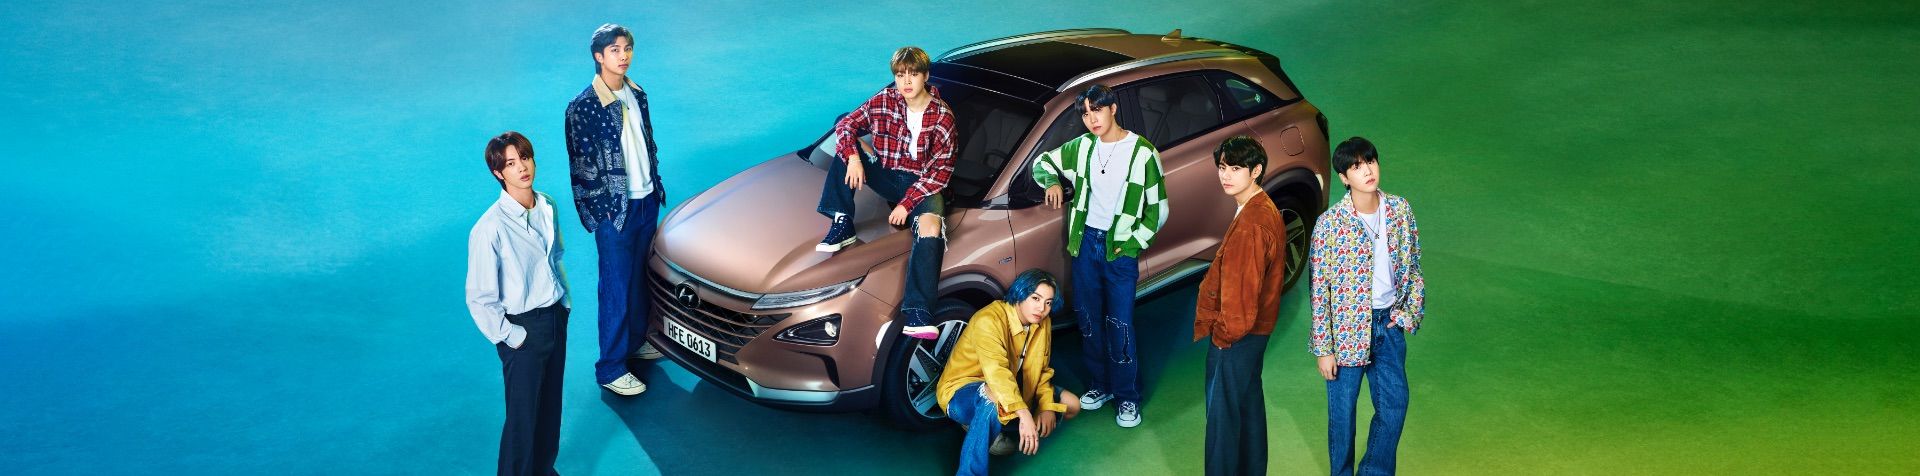 한국 보이그룹 BTS 7명 멤버가 파란색, 초록색 배경으로 현대 넥쏘 자동차 주위에 서 있다.